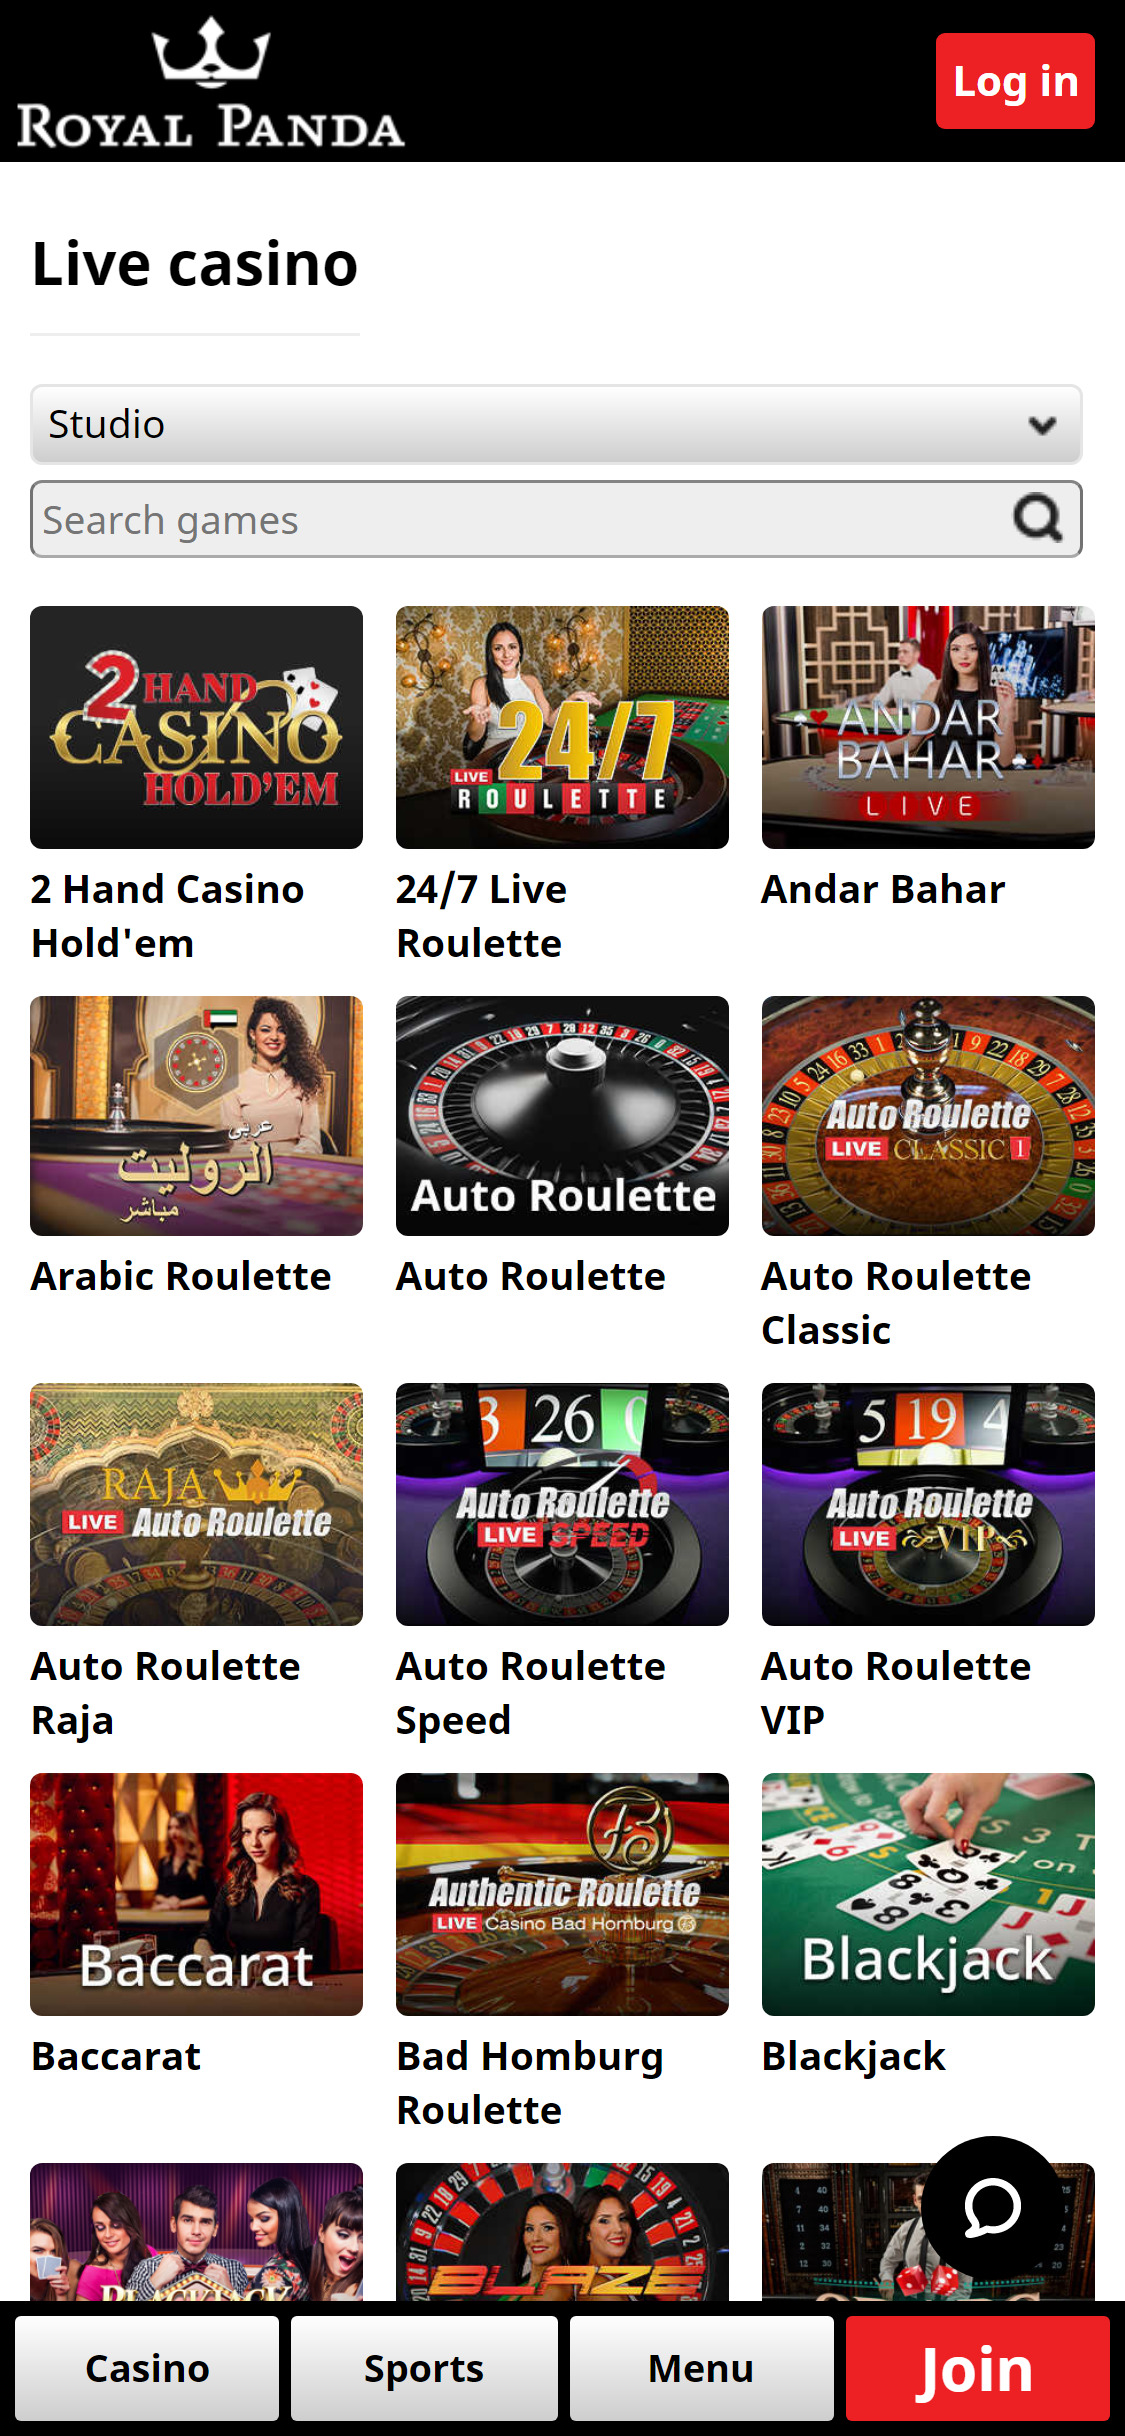 Royal Panda Casino Mobile Live Dealer Games Review